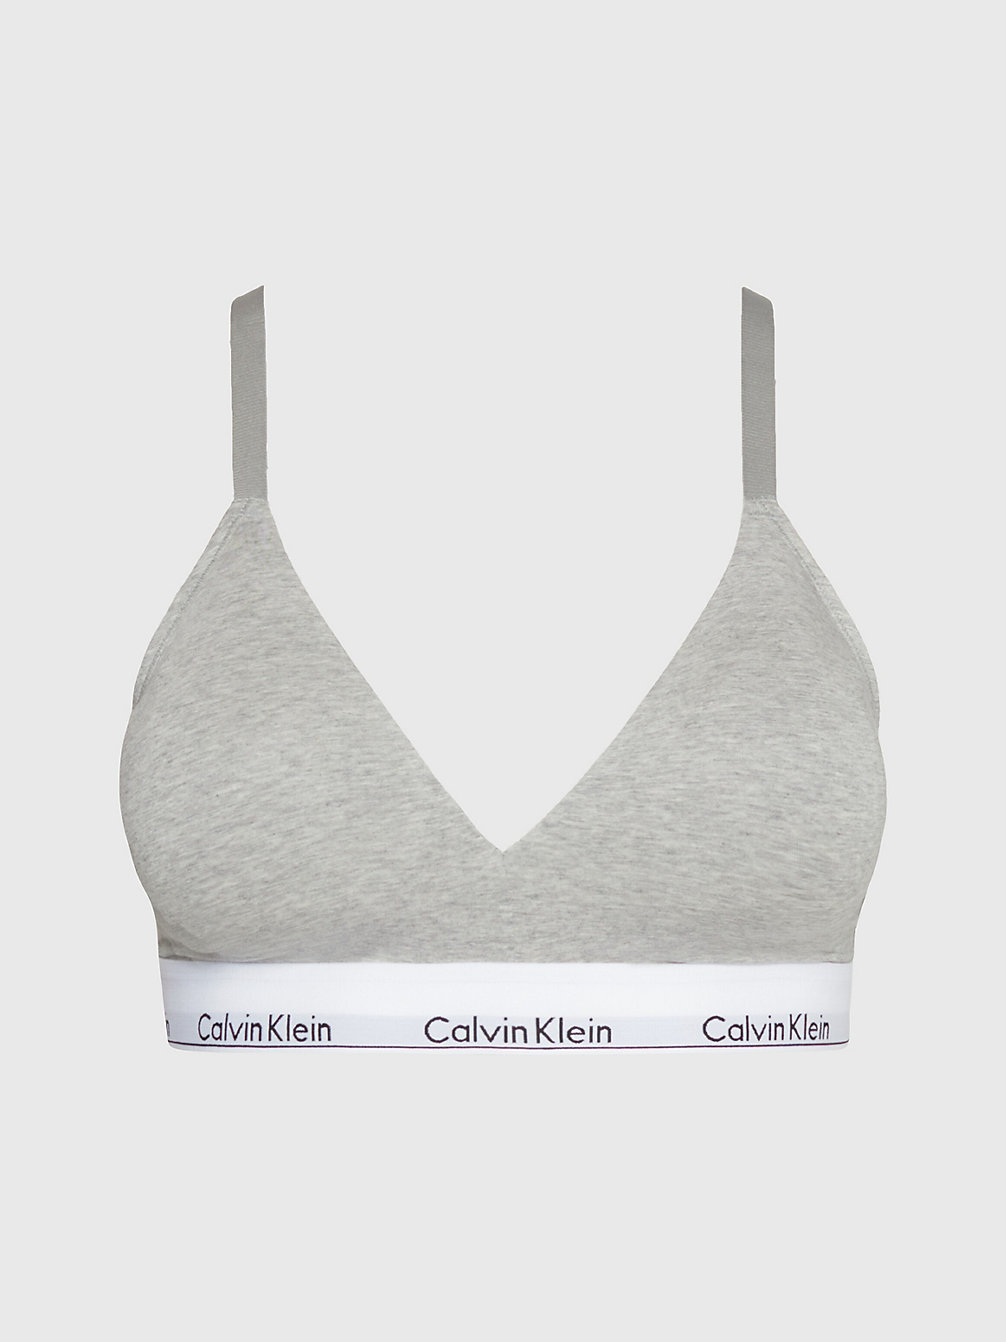 GREY HEATHER > Triangel-Bh In Großen Größen – Modern Cotton > undefined Damen - Calvin Klein